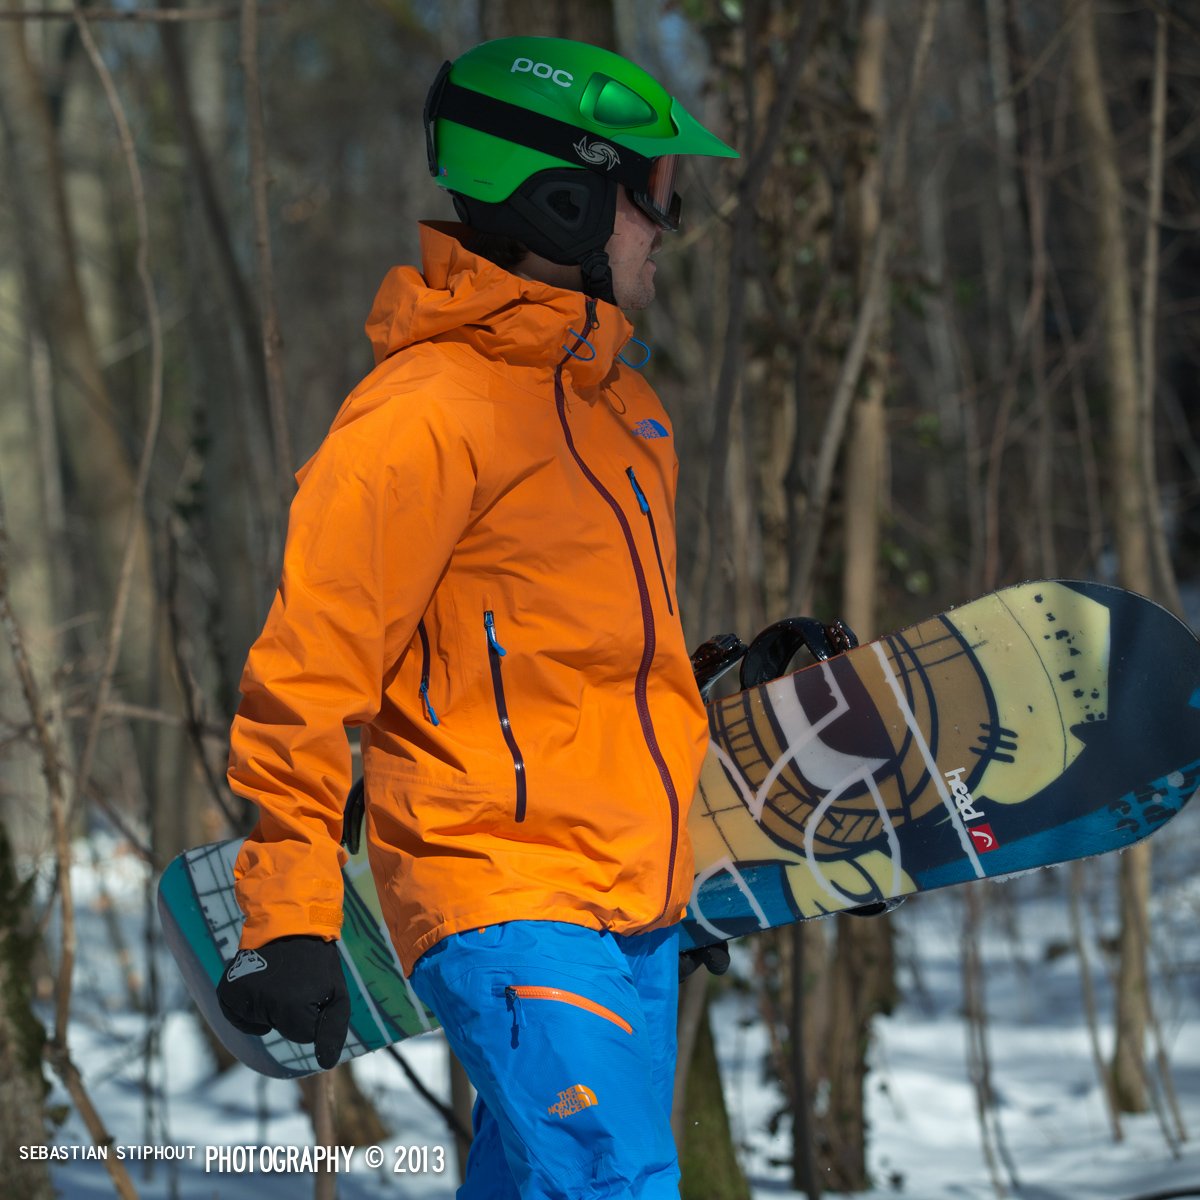 Testbericht - POC Synapsis 2.0: Luftigleichter Ski- und Snowboard-Helm für Freerider